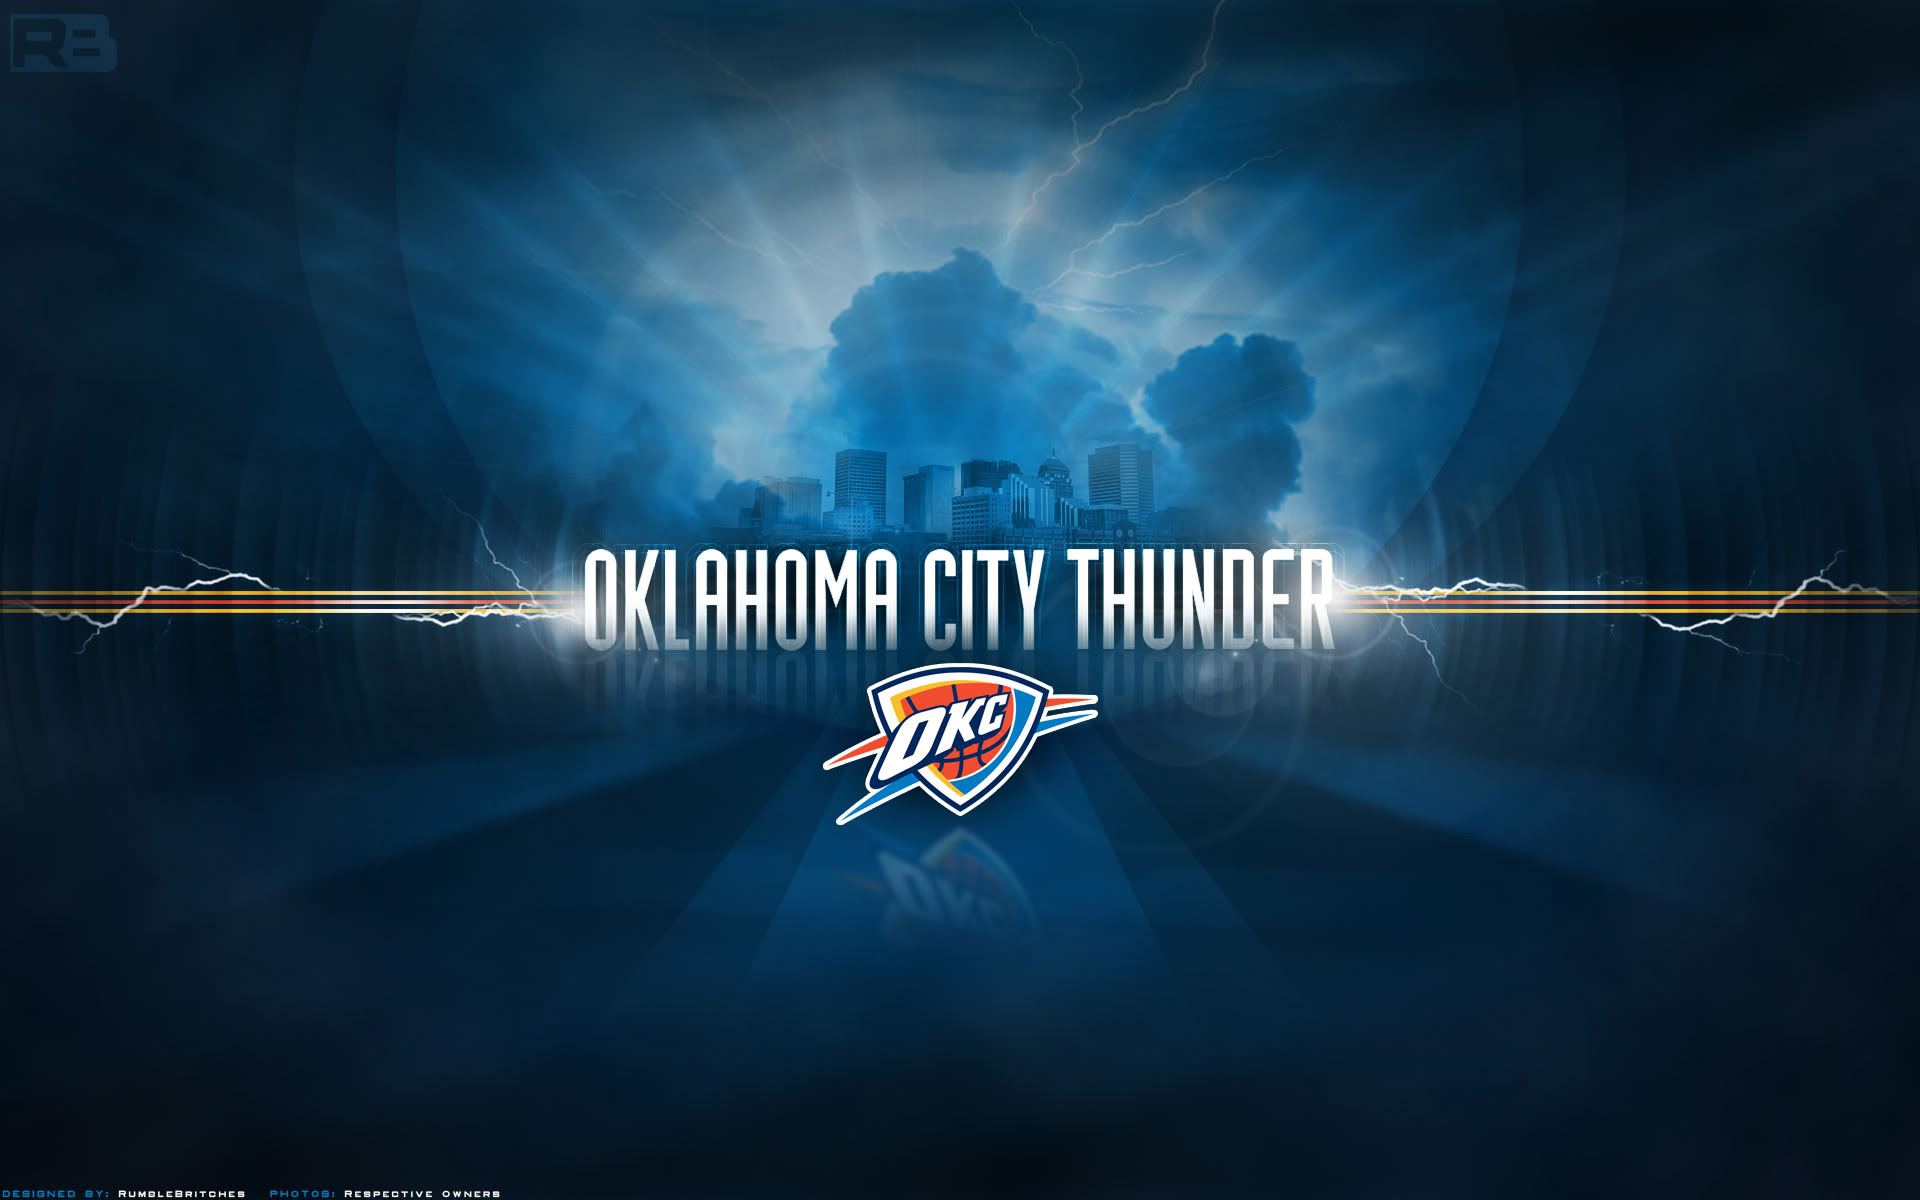 Oklahoma City Thunder Wallpapers | Basketball Wallpapers at ...